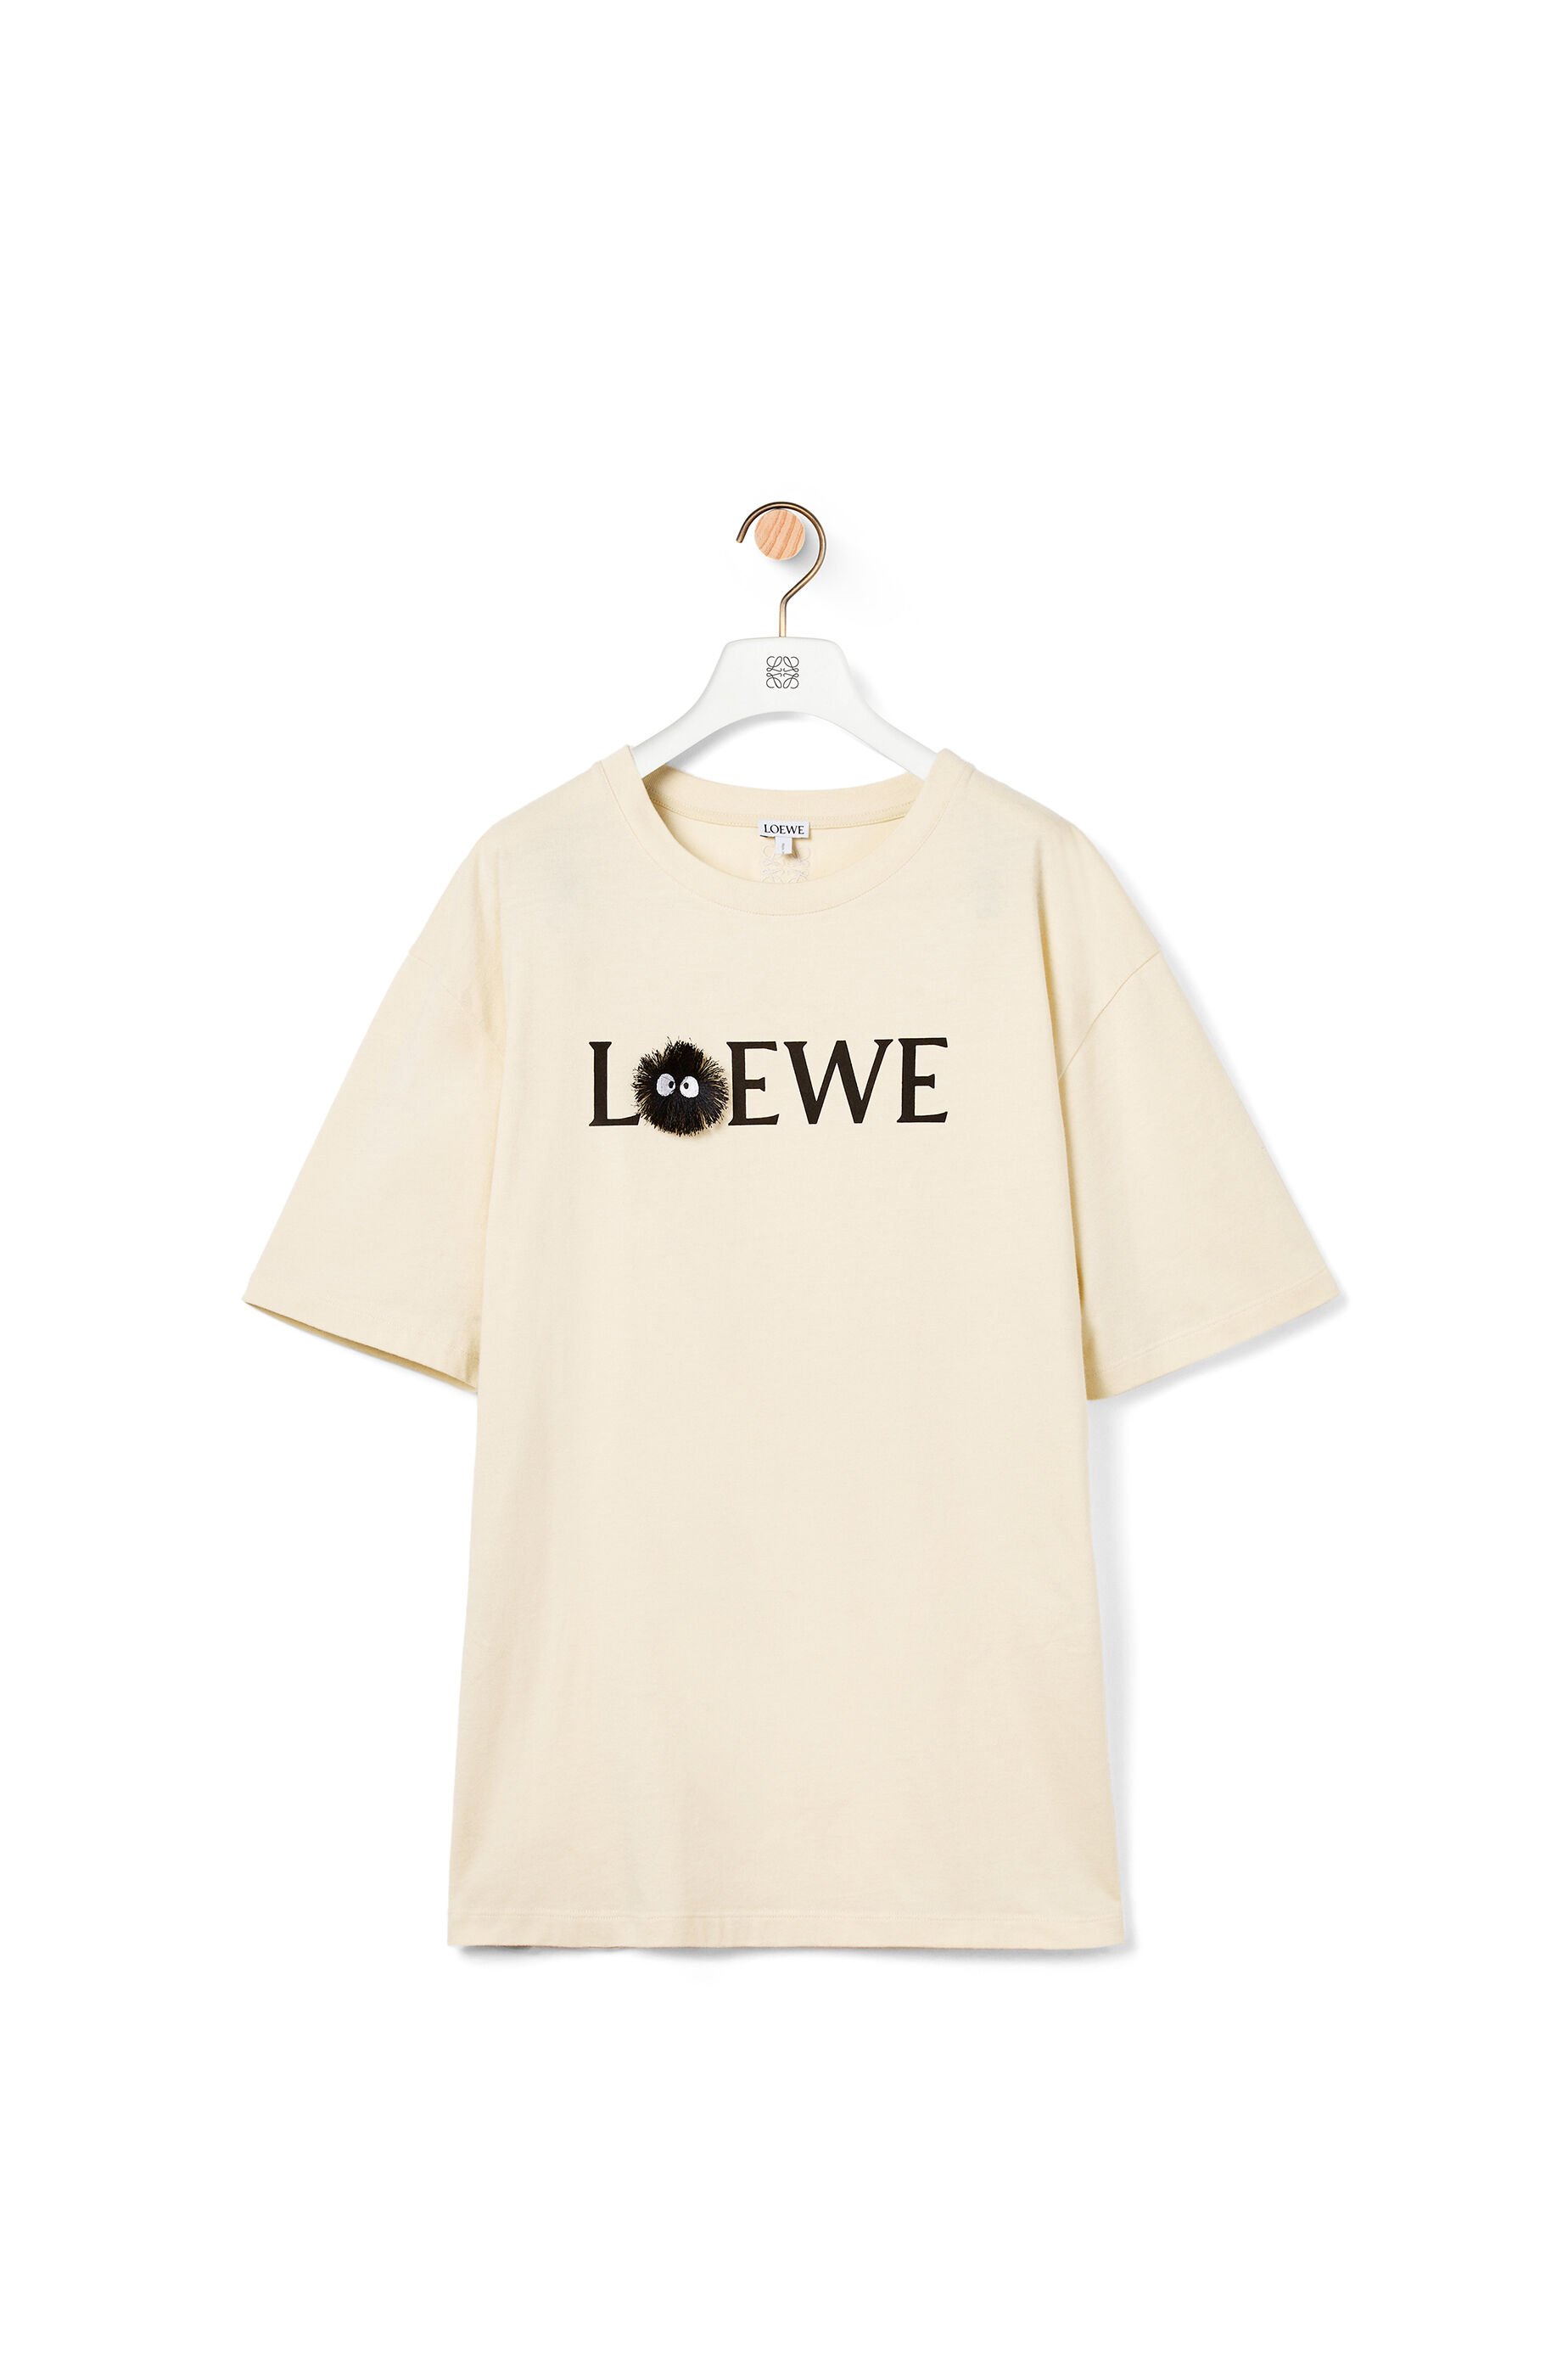 loewe white t shirt